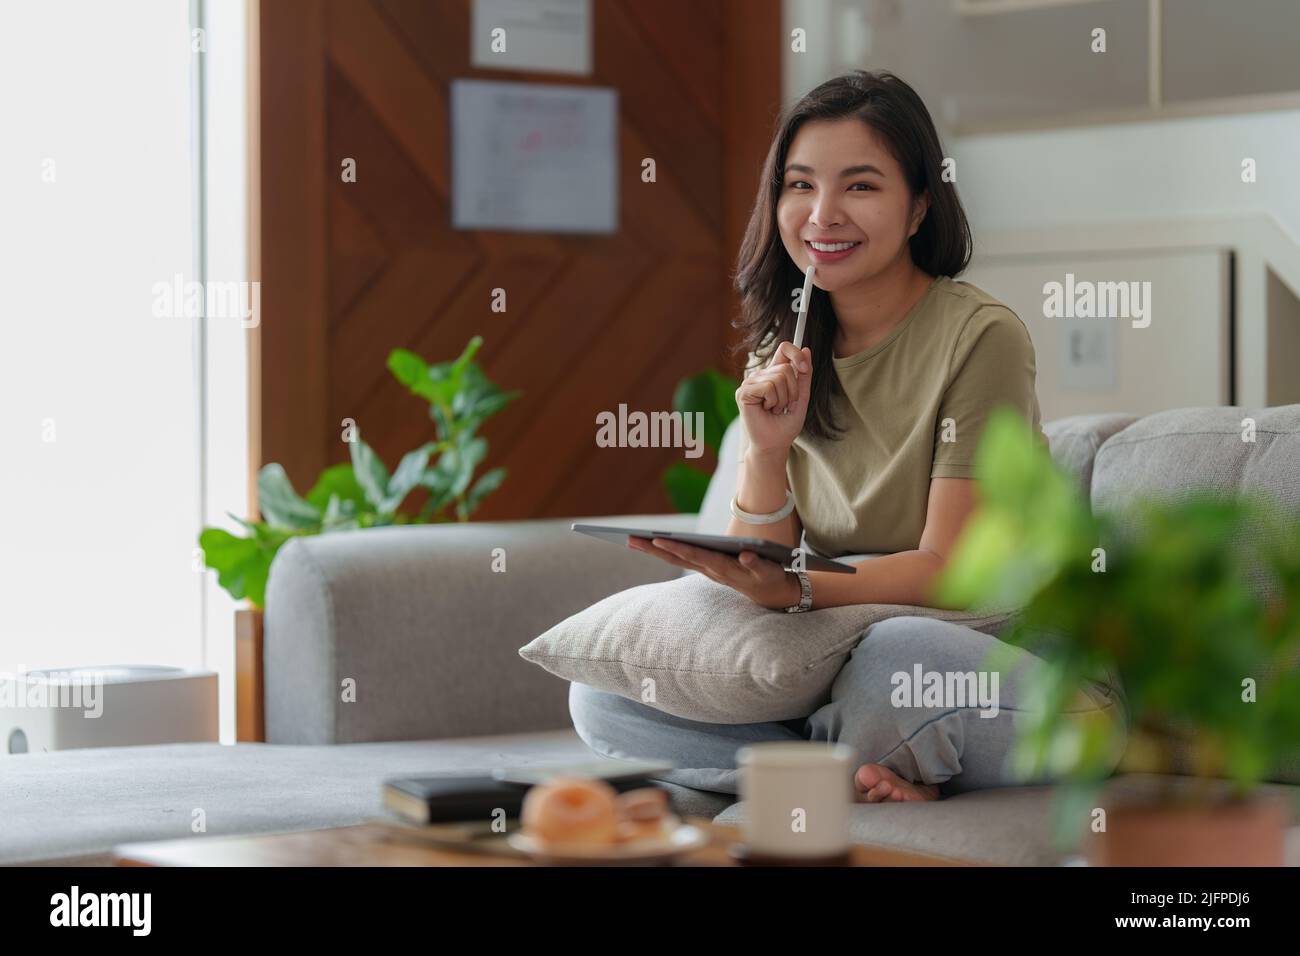 Portrait d'une jeune femme asiatique utilisant les réseaux sociaux pour discuter sur tablette numérique. Style de vie, shopping en ligne, détente sur le canapé. Banque D'Images